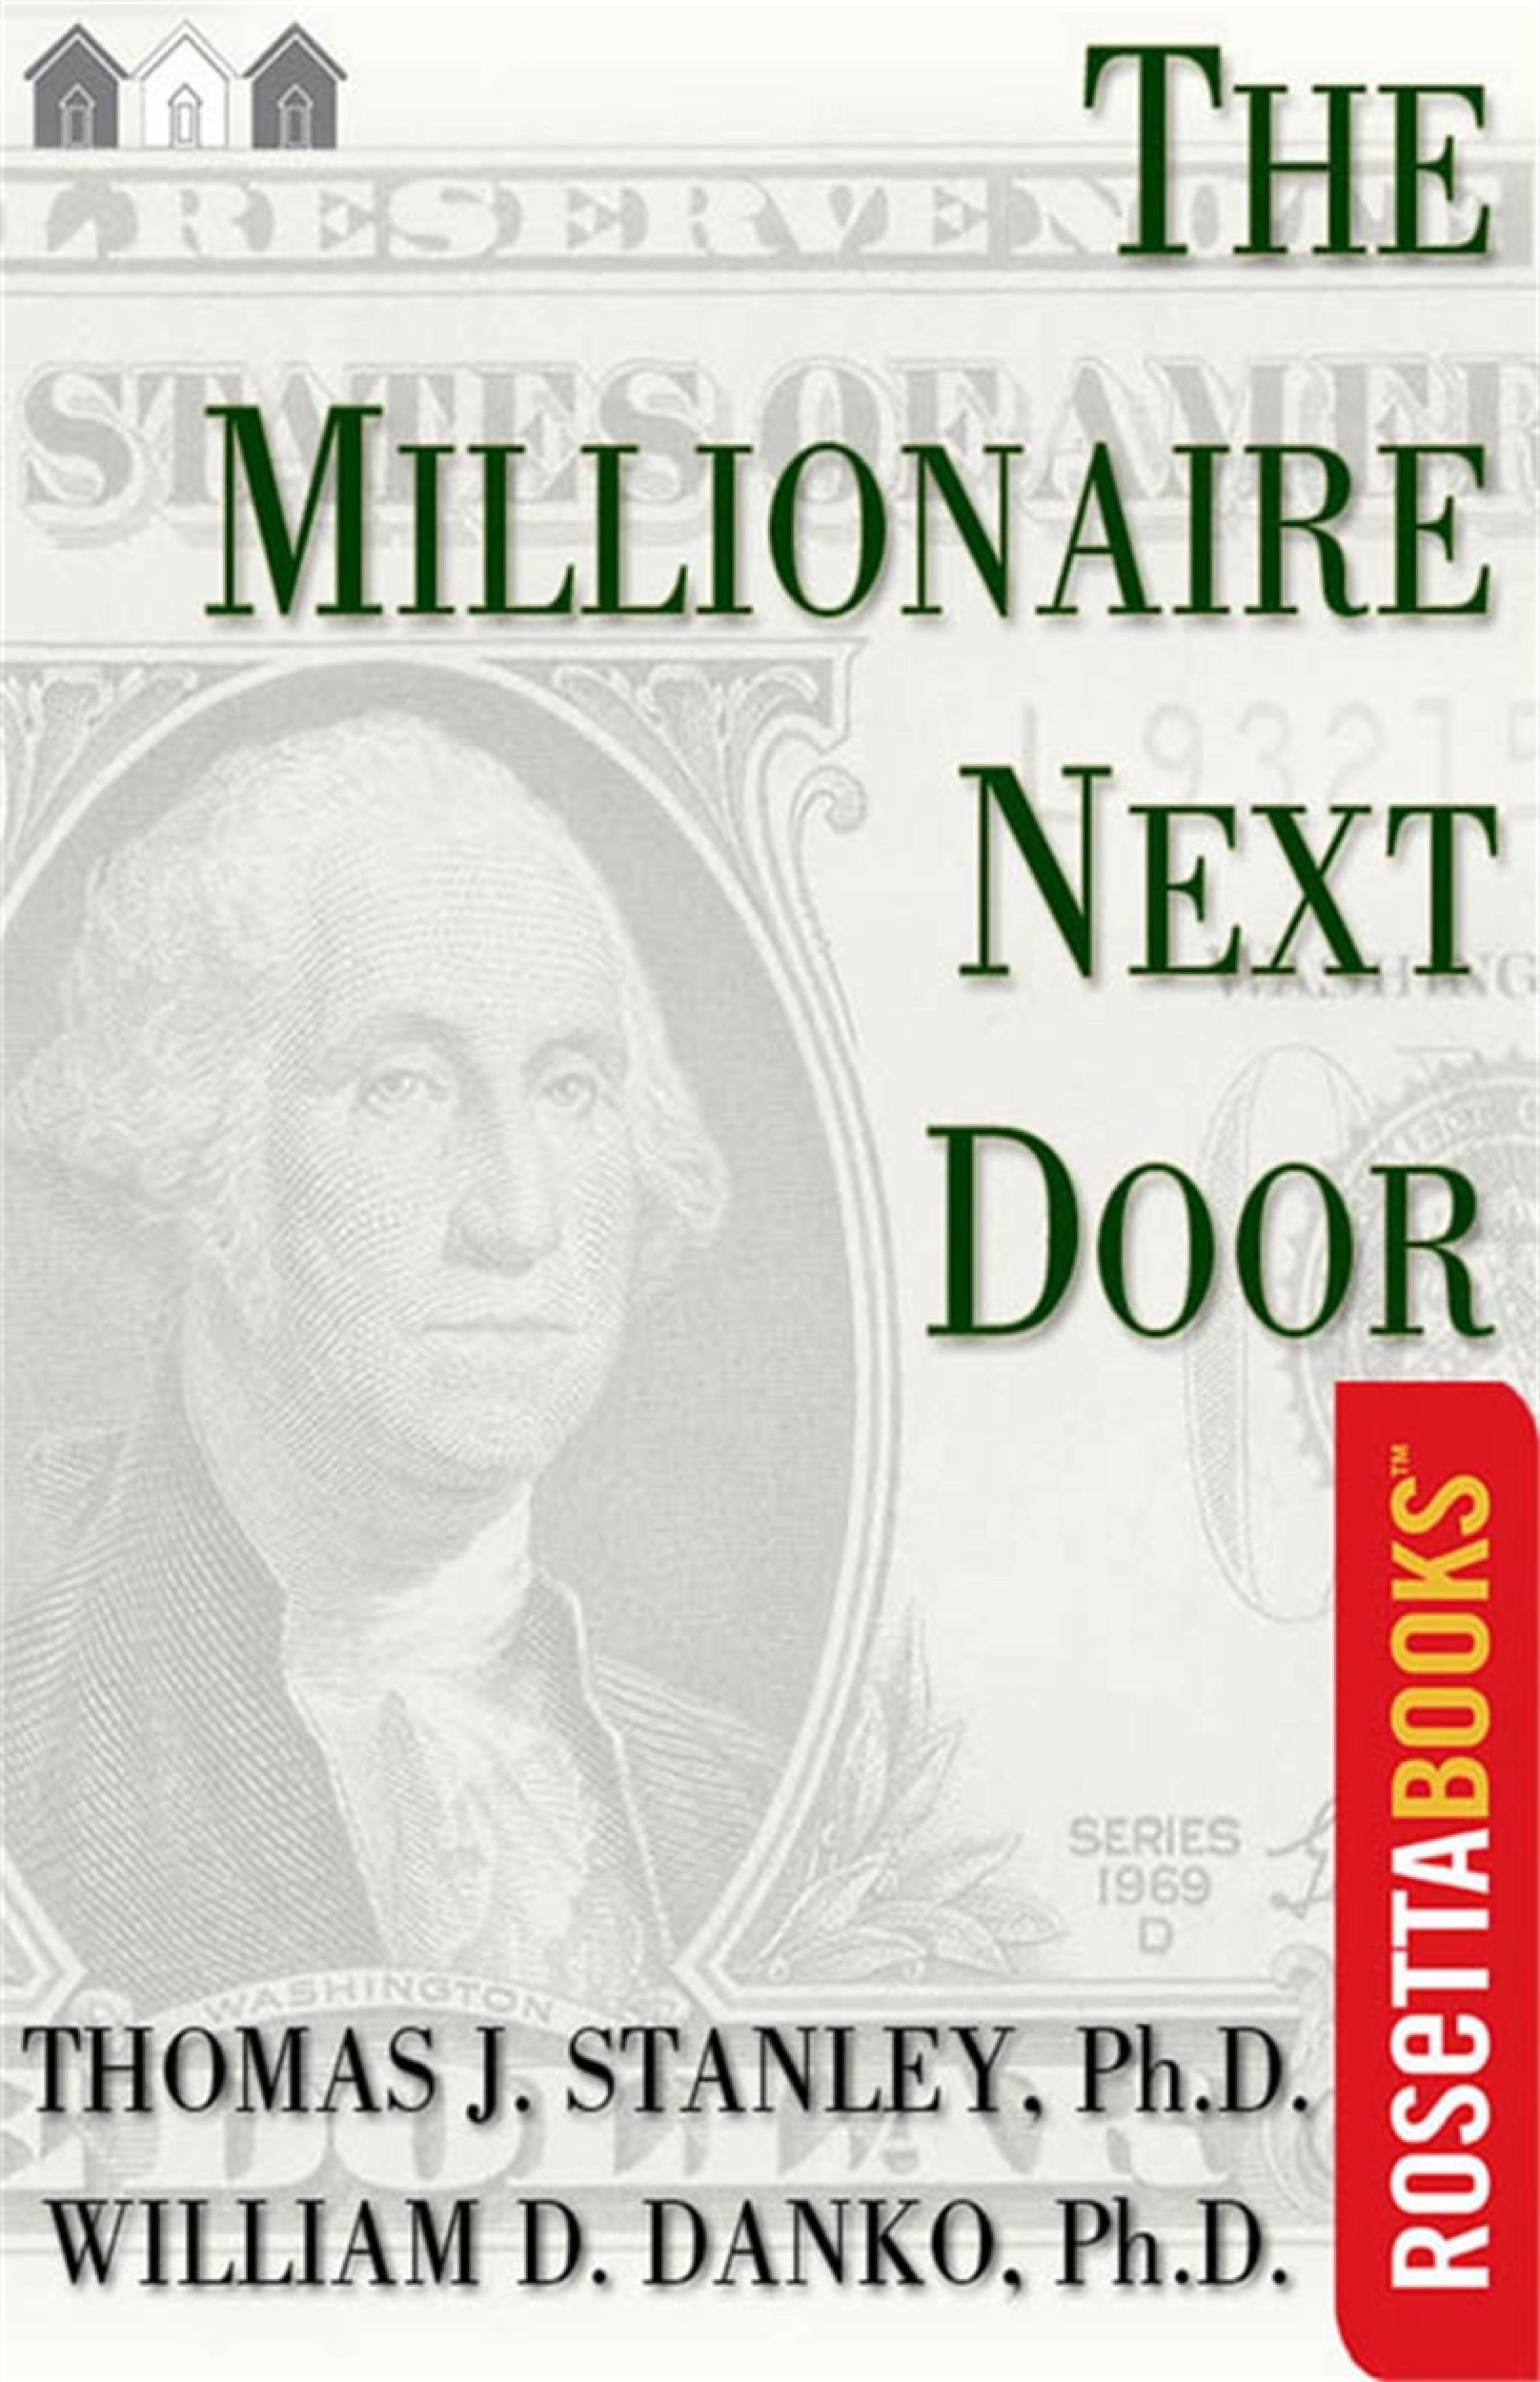 the millionaire next door audiobook torrent